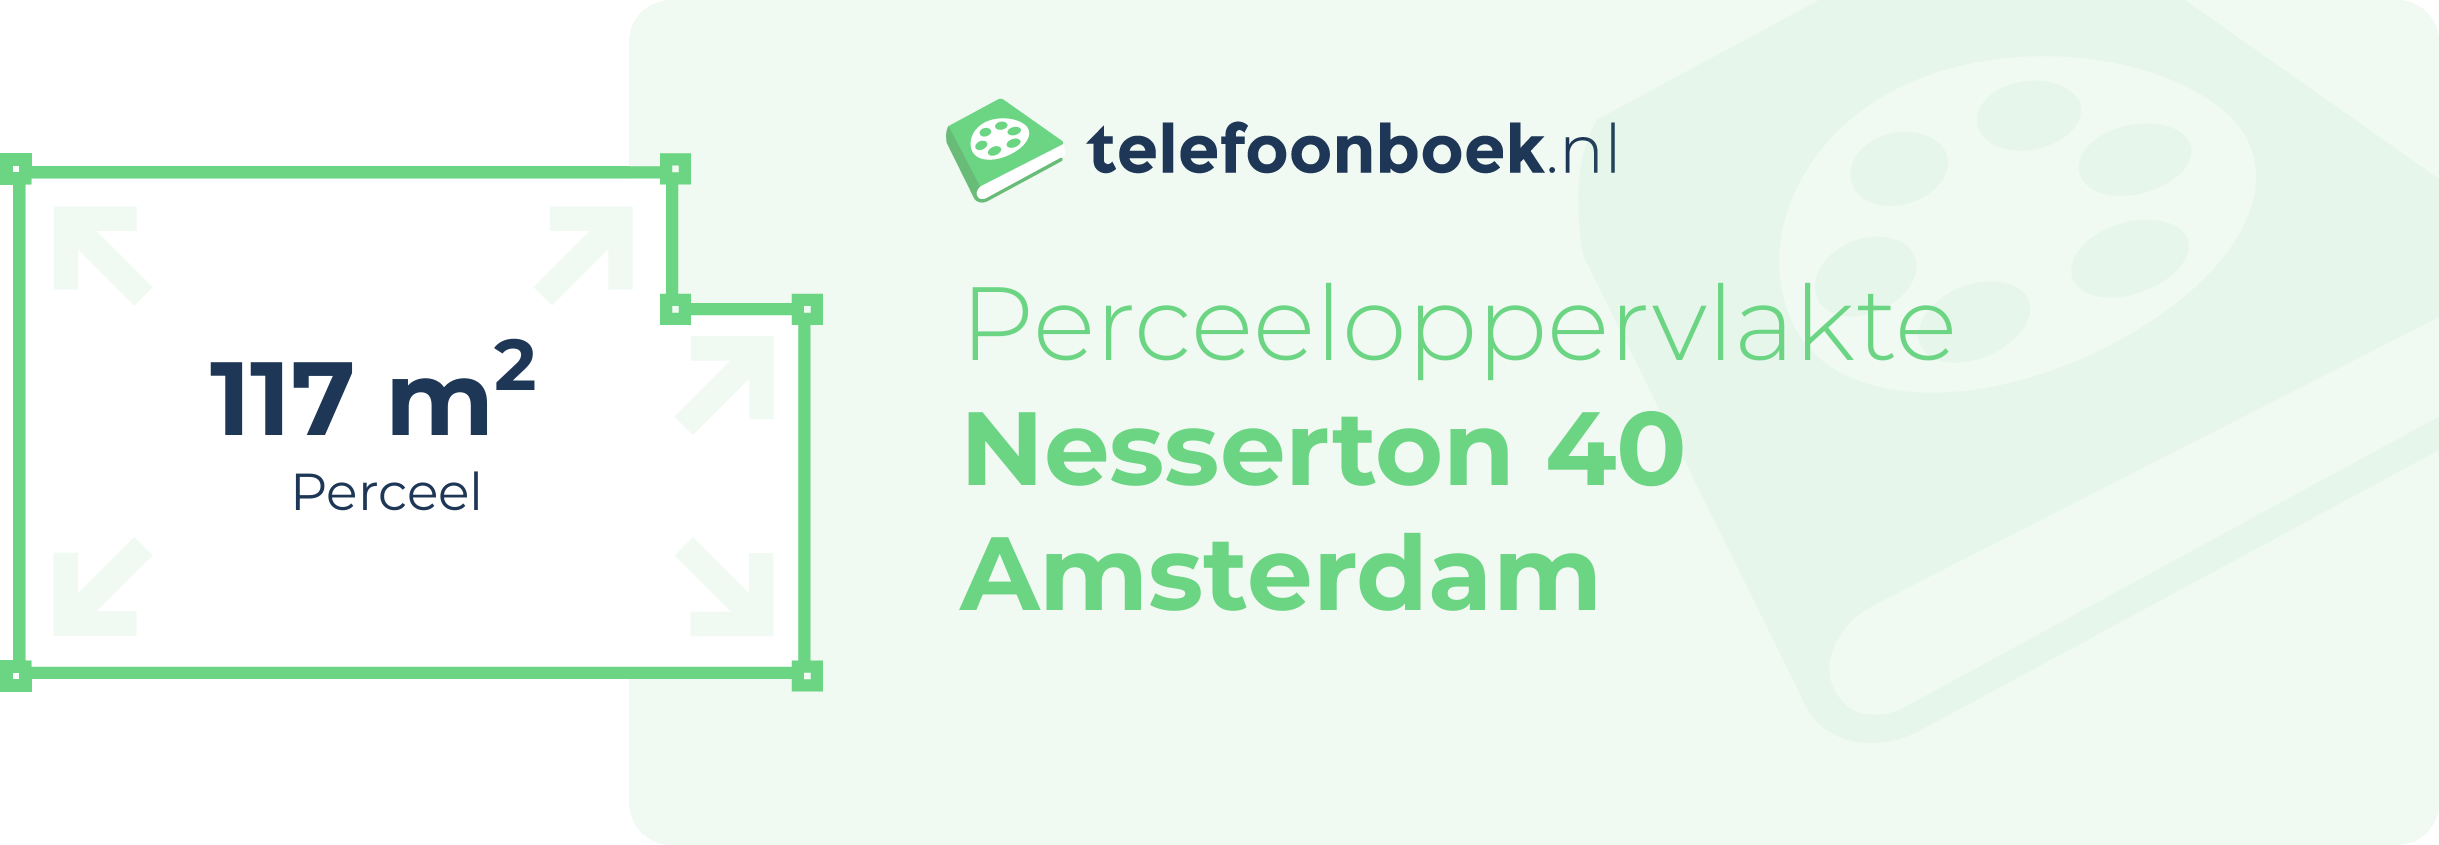 Perceeloppervlakte Nesserton 40 Amsterdam